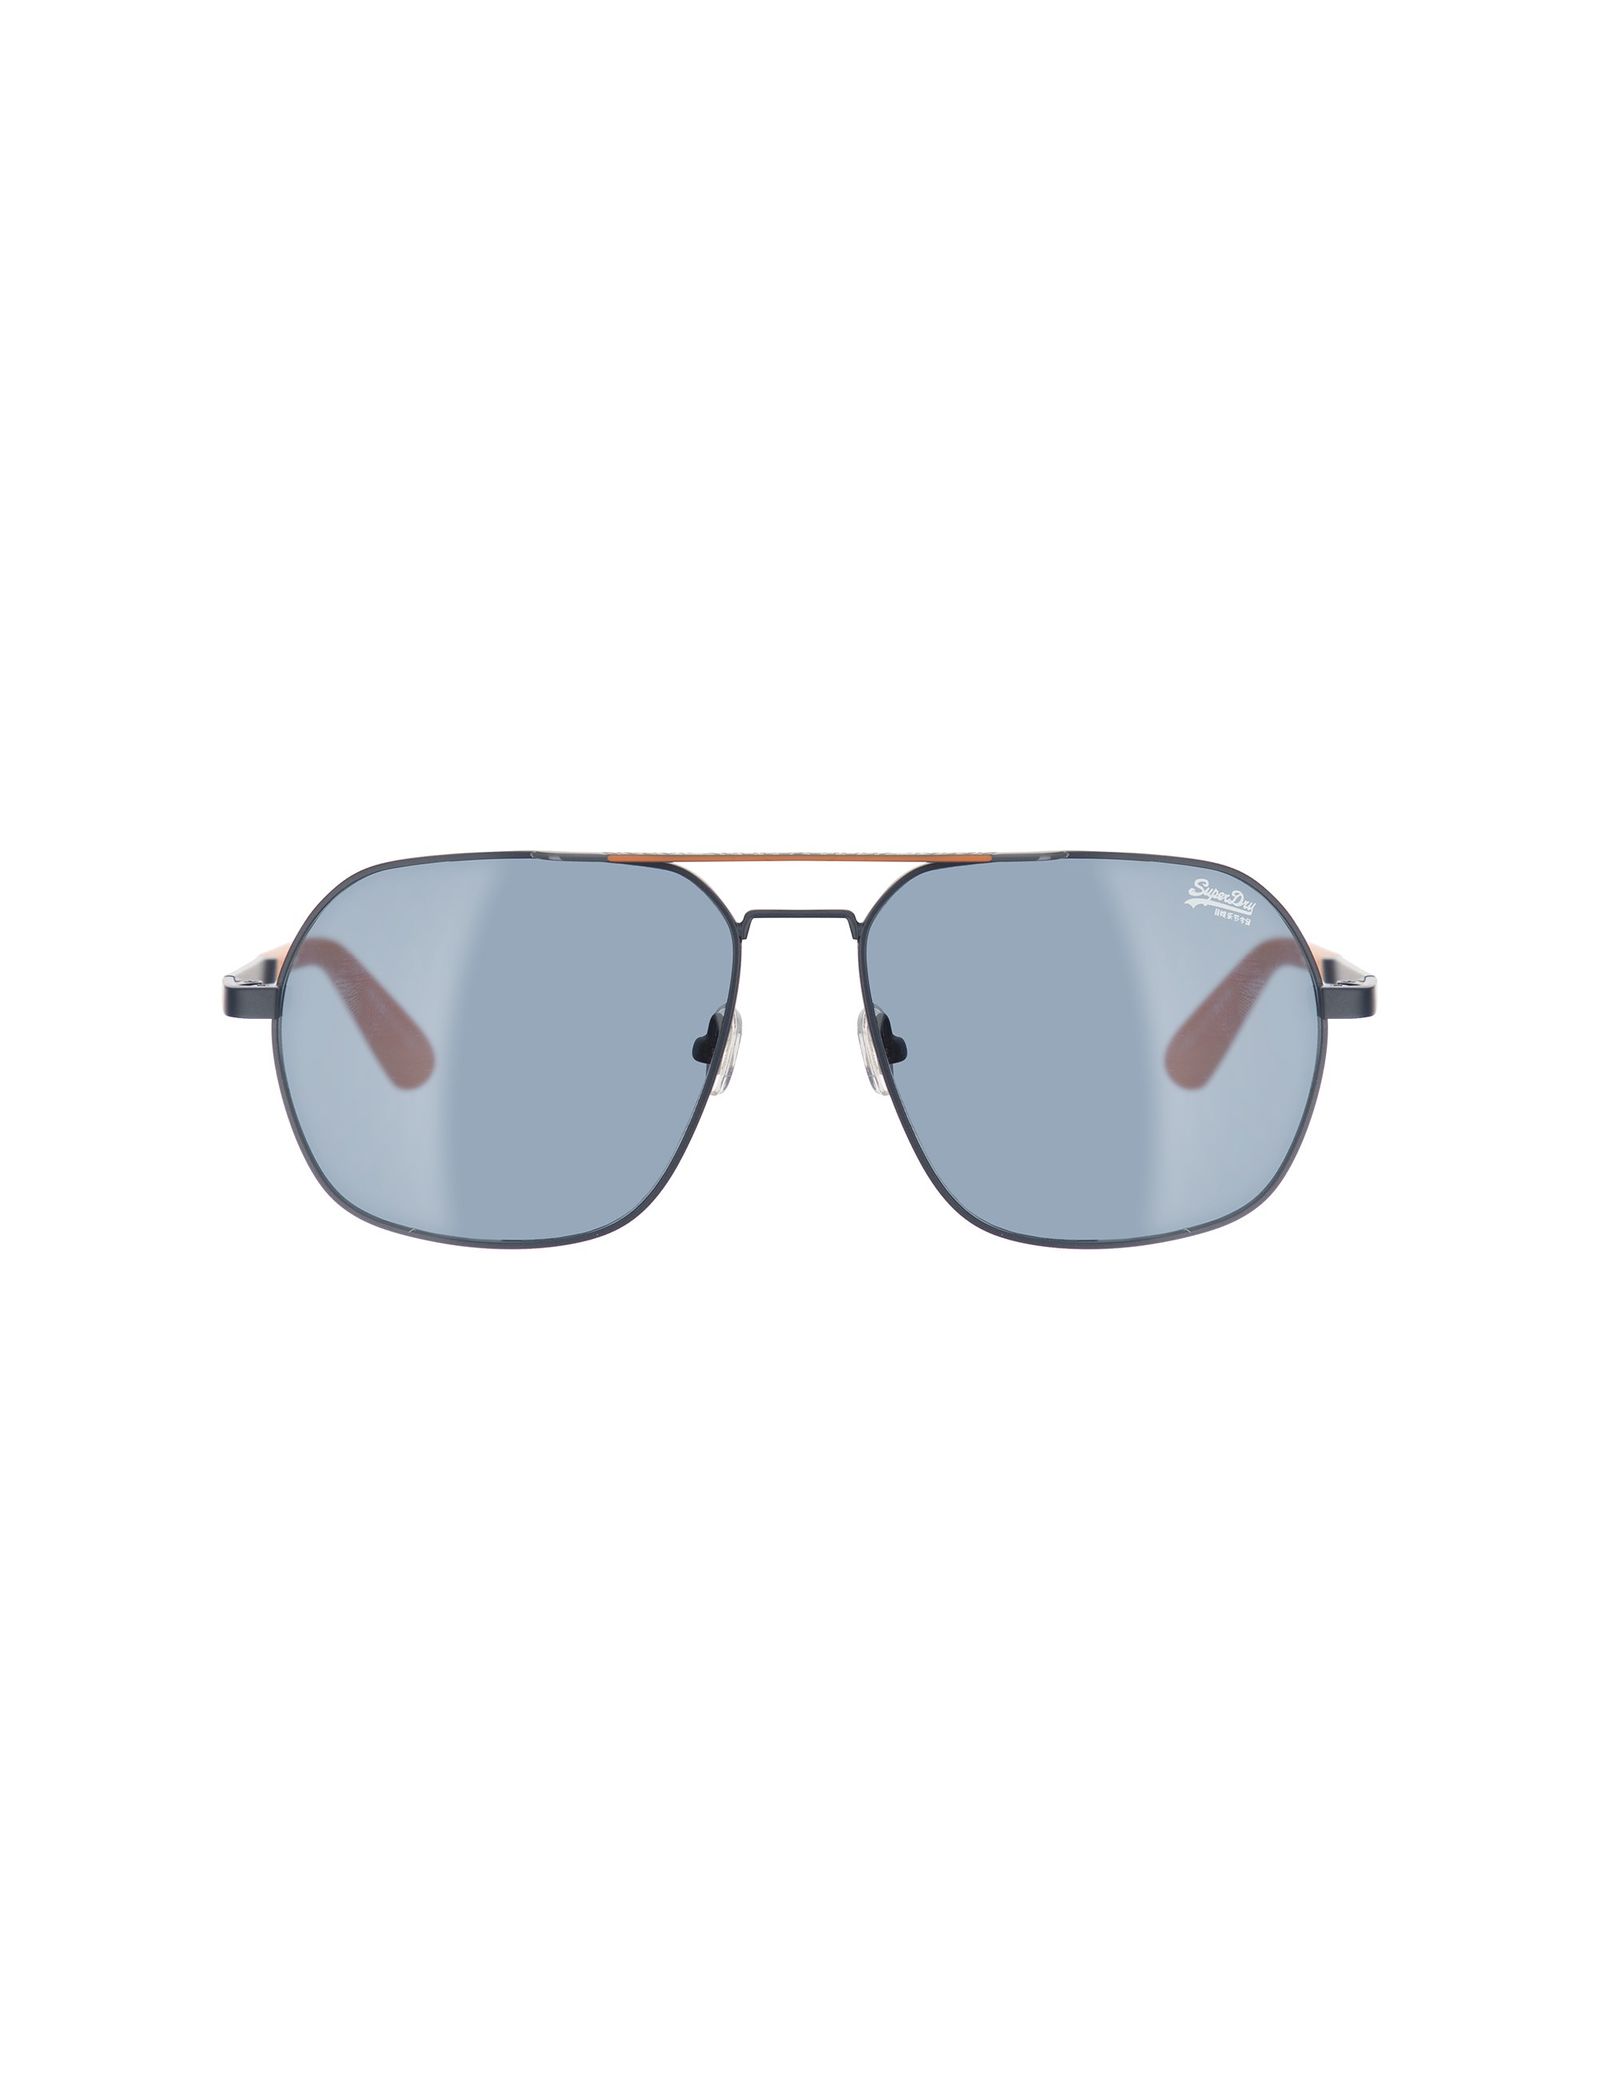 عینک آفتابی خلبانی مردانه - سوپردرای - سرمه اي - 2